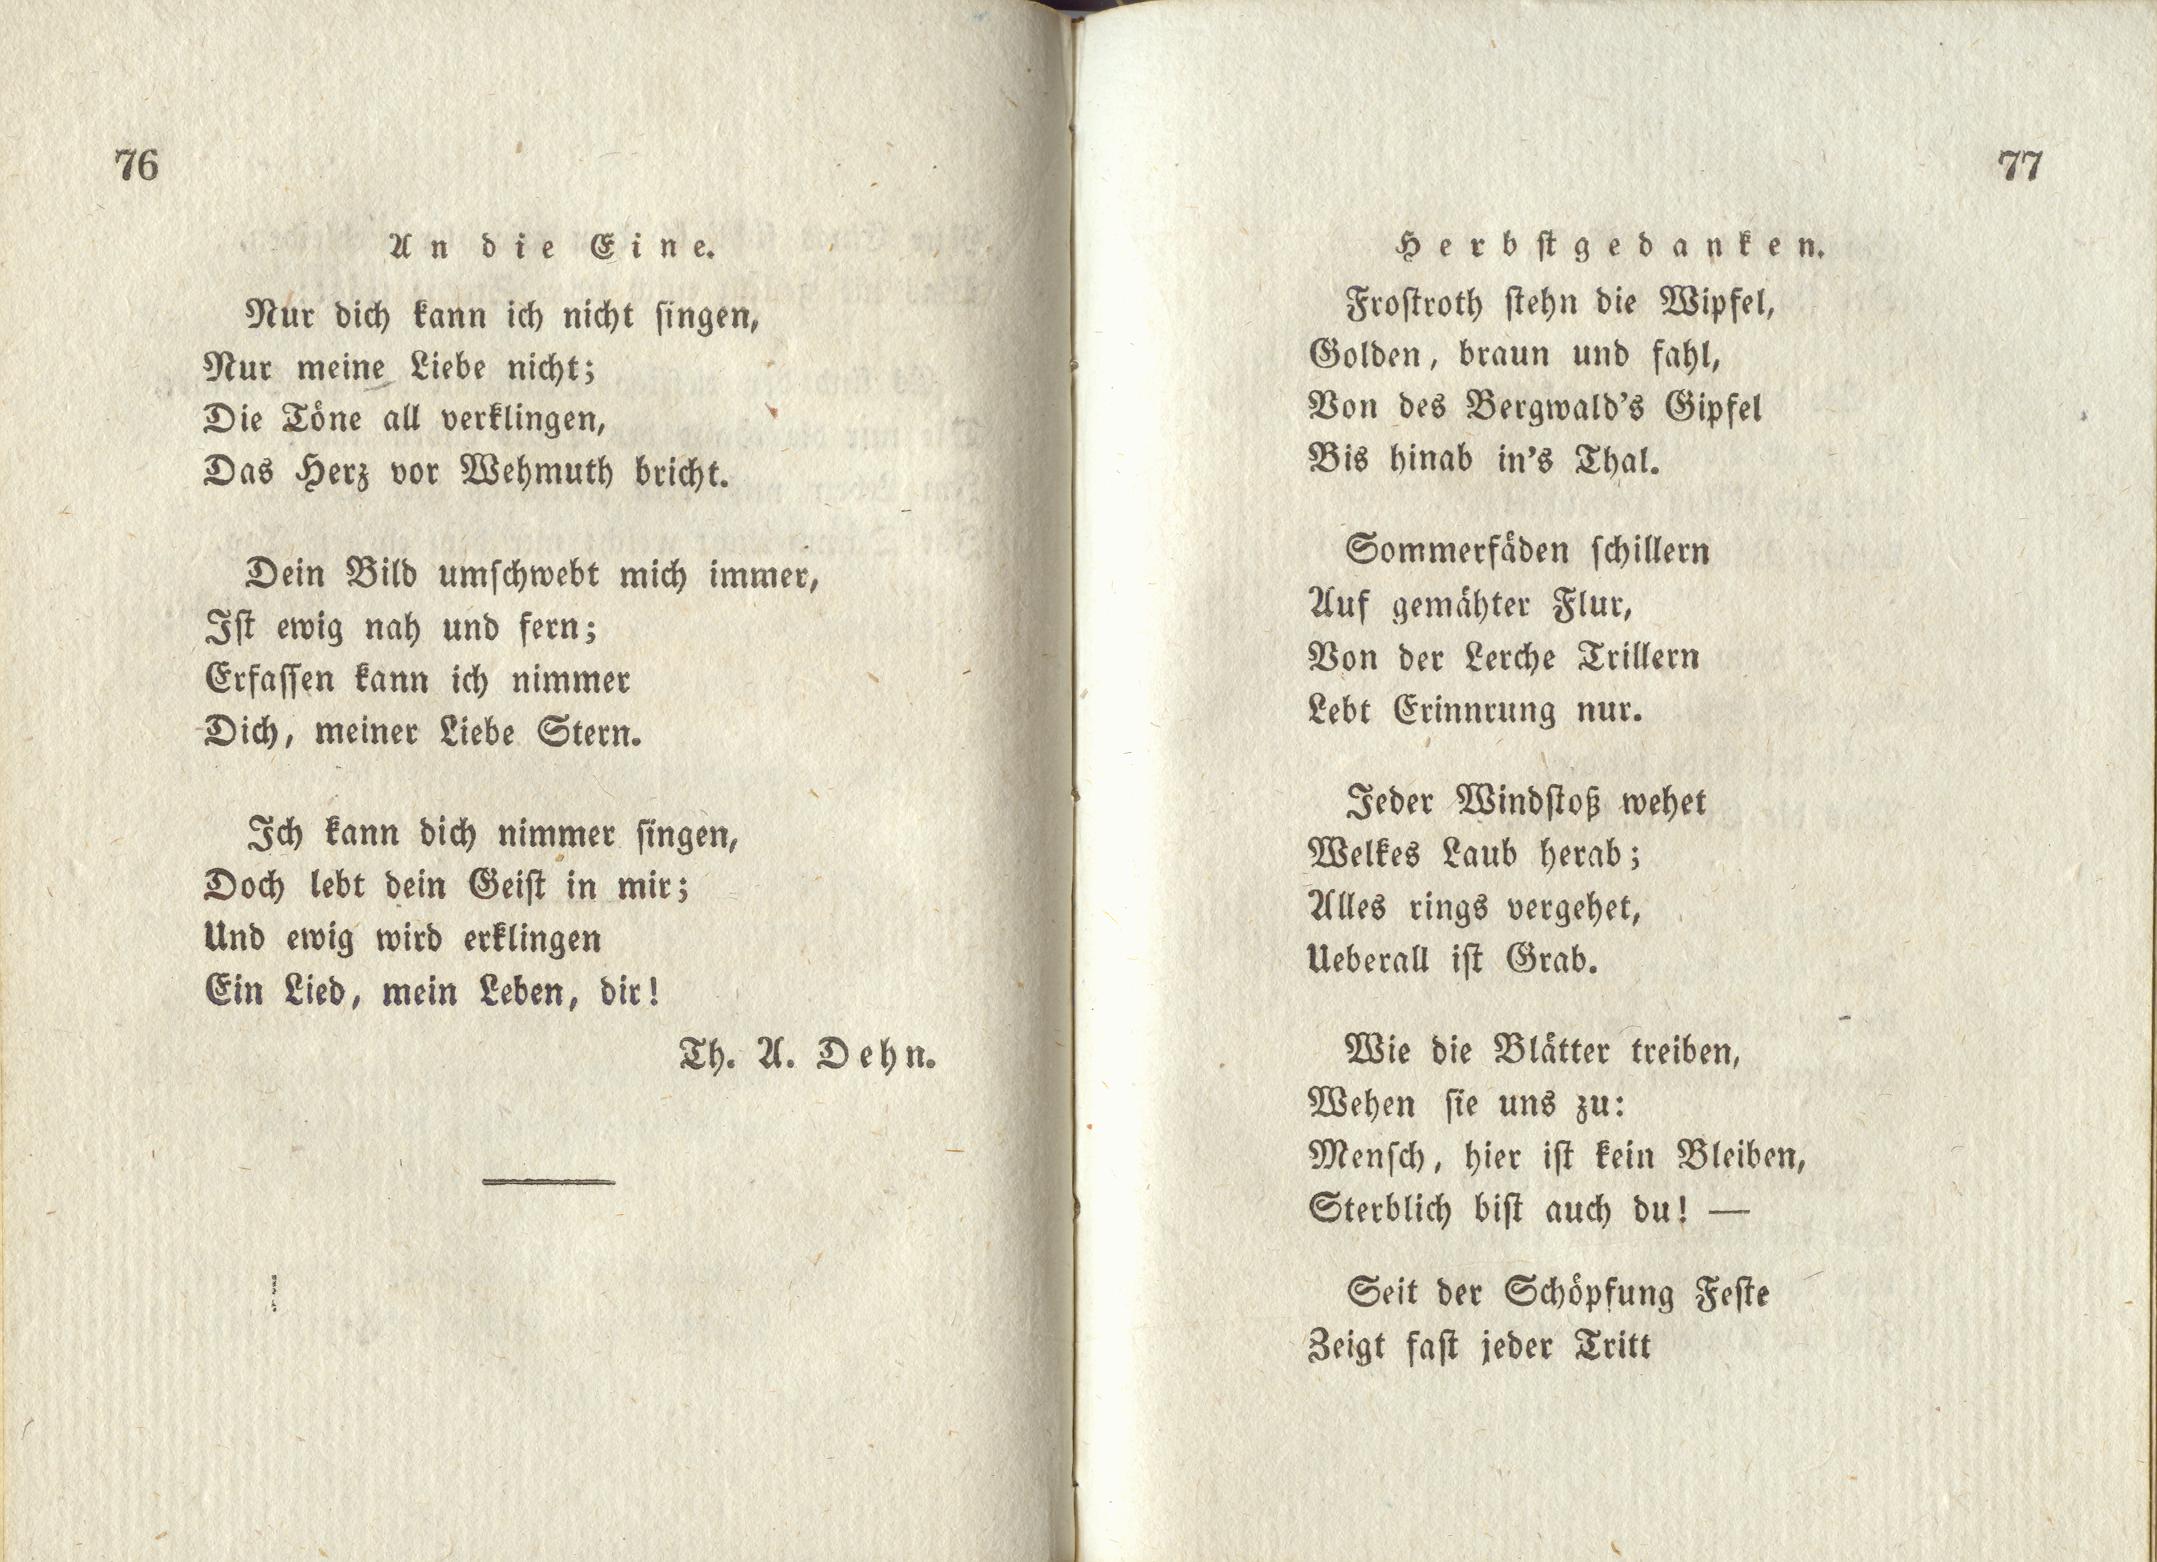 Herbstgedanken (1830) | 1. (76-77) Main body of text